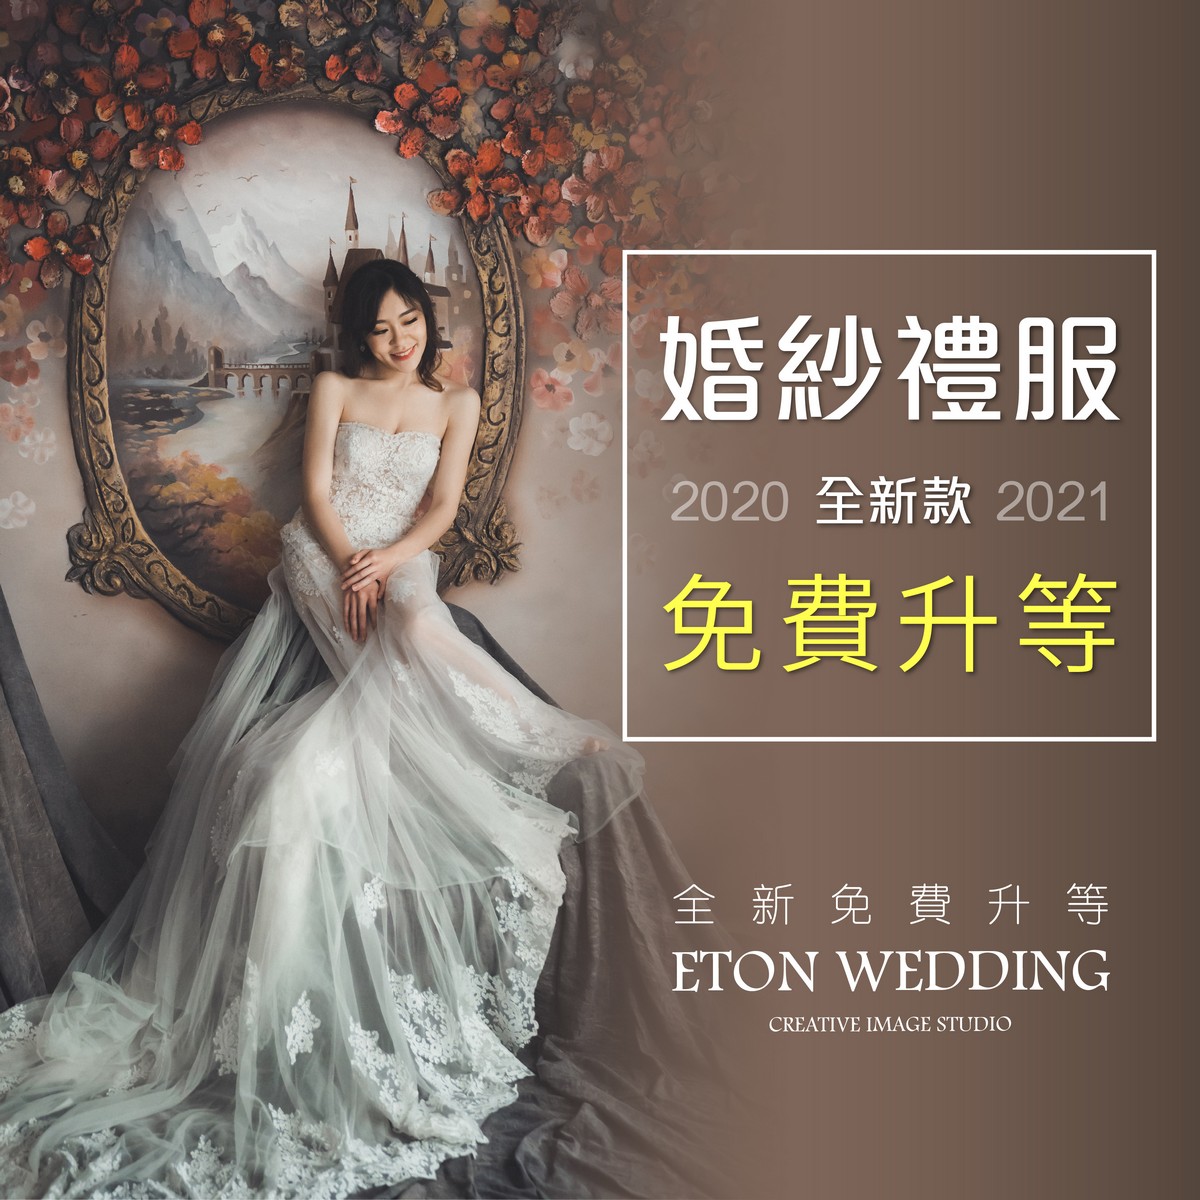 台北 禮服推薦,婚紗推薦 台北, 台北 婚紗價格,台北 婚紗工作室